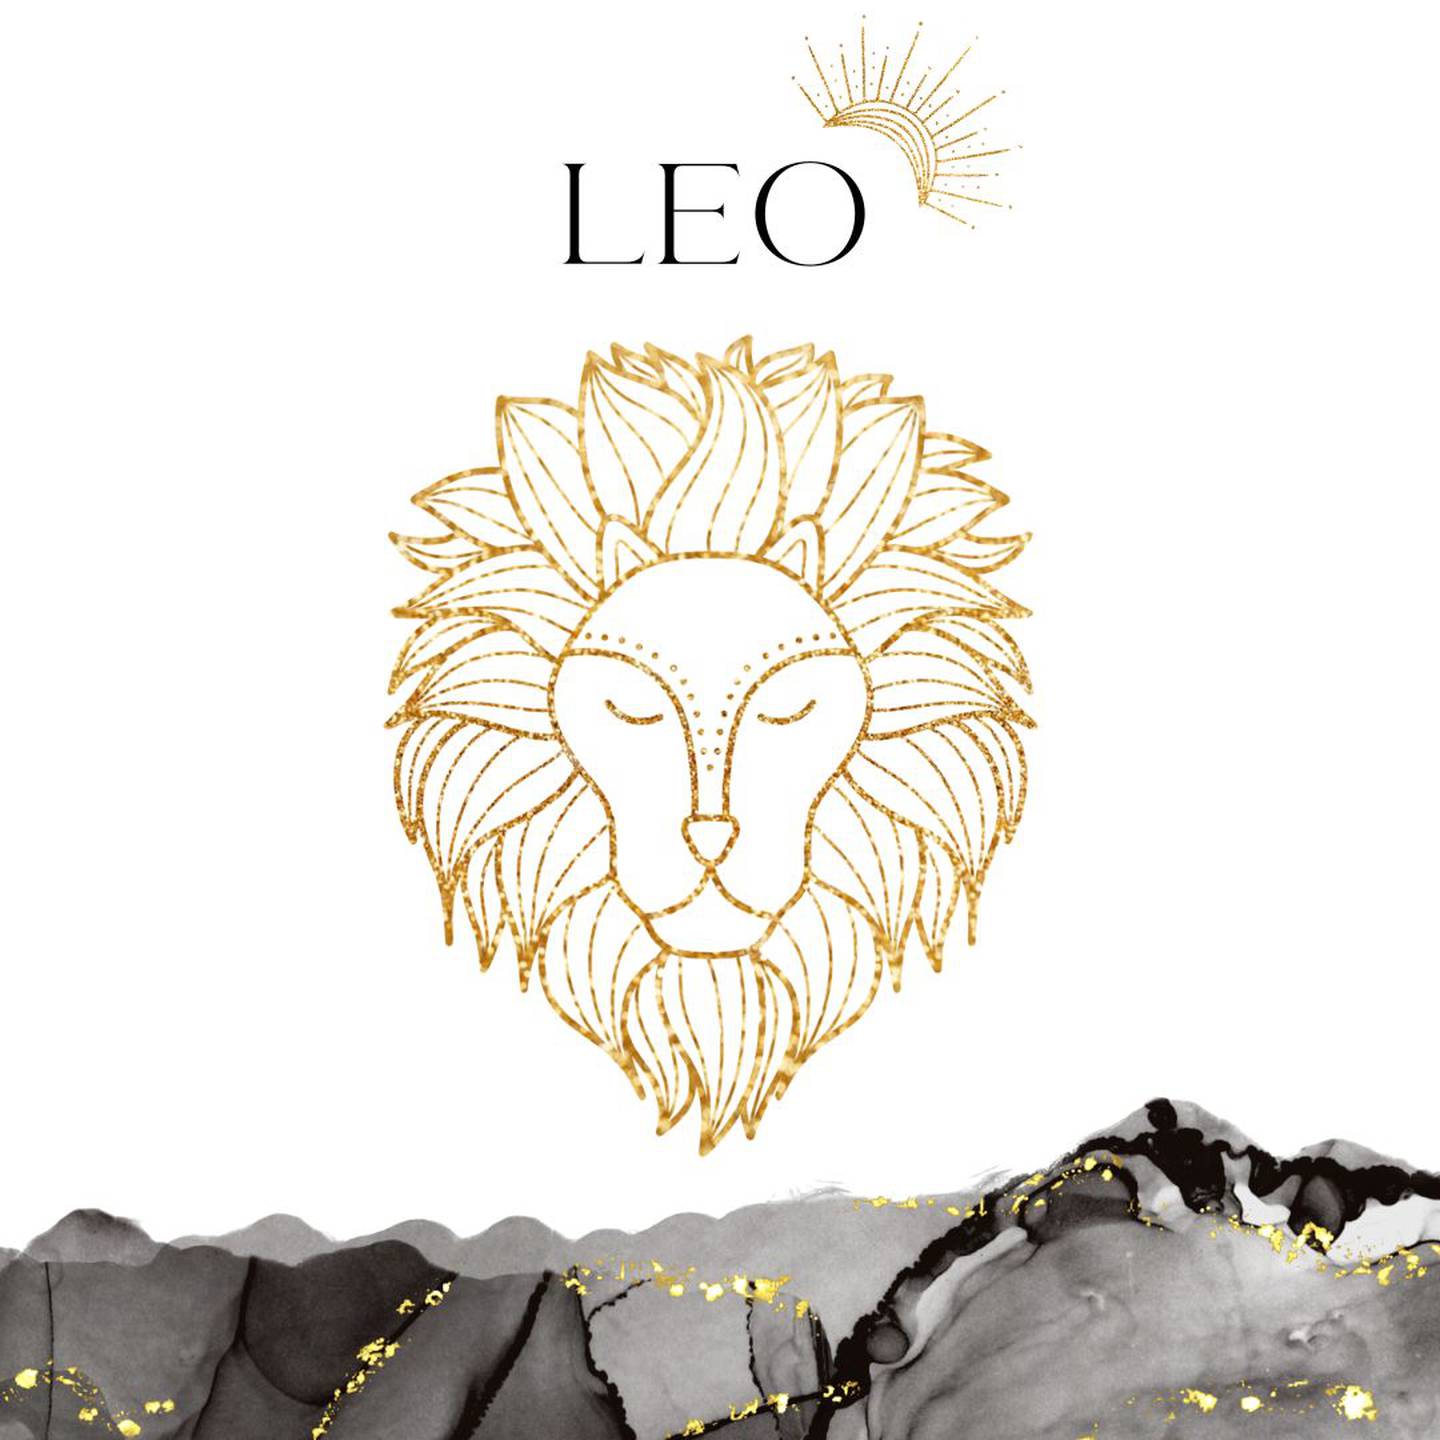 Palabra 'LEO' en letras grandes y negrasen el centro. Debajo, símbolo del signo de Leo: la cabeza de un león dorado.